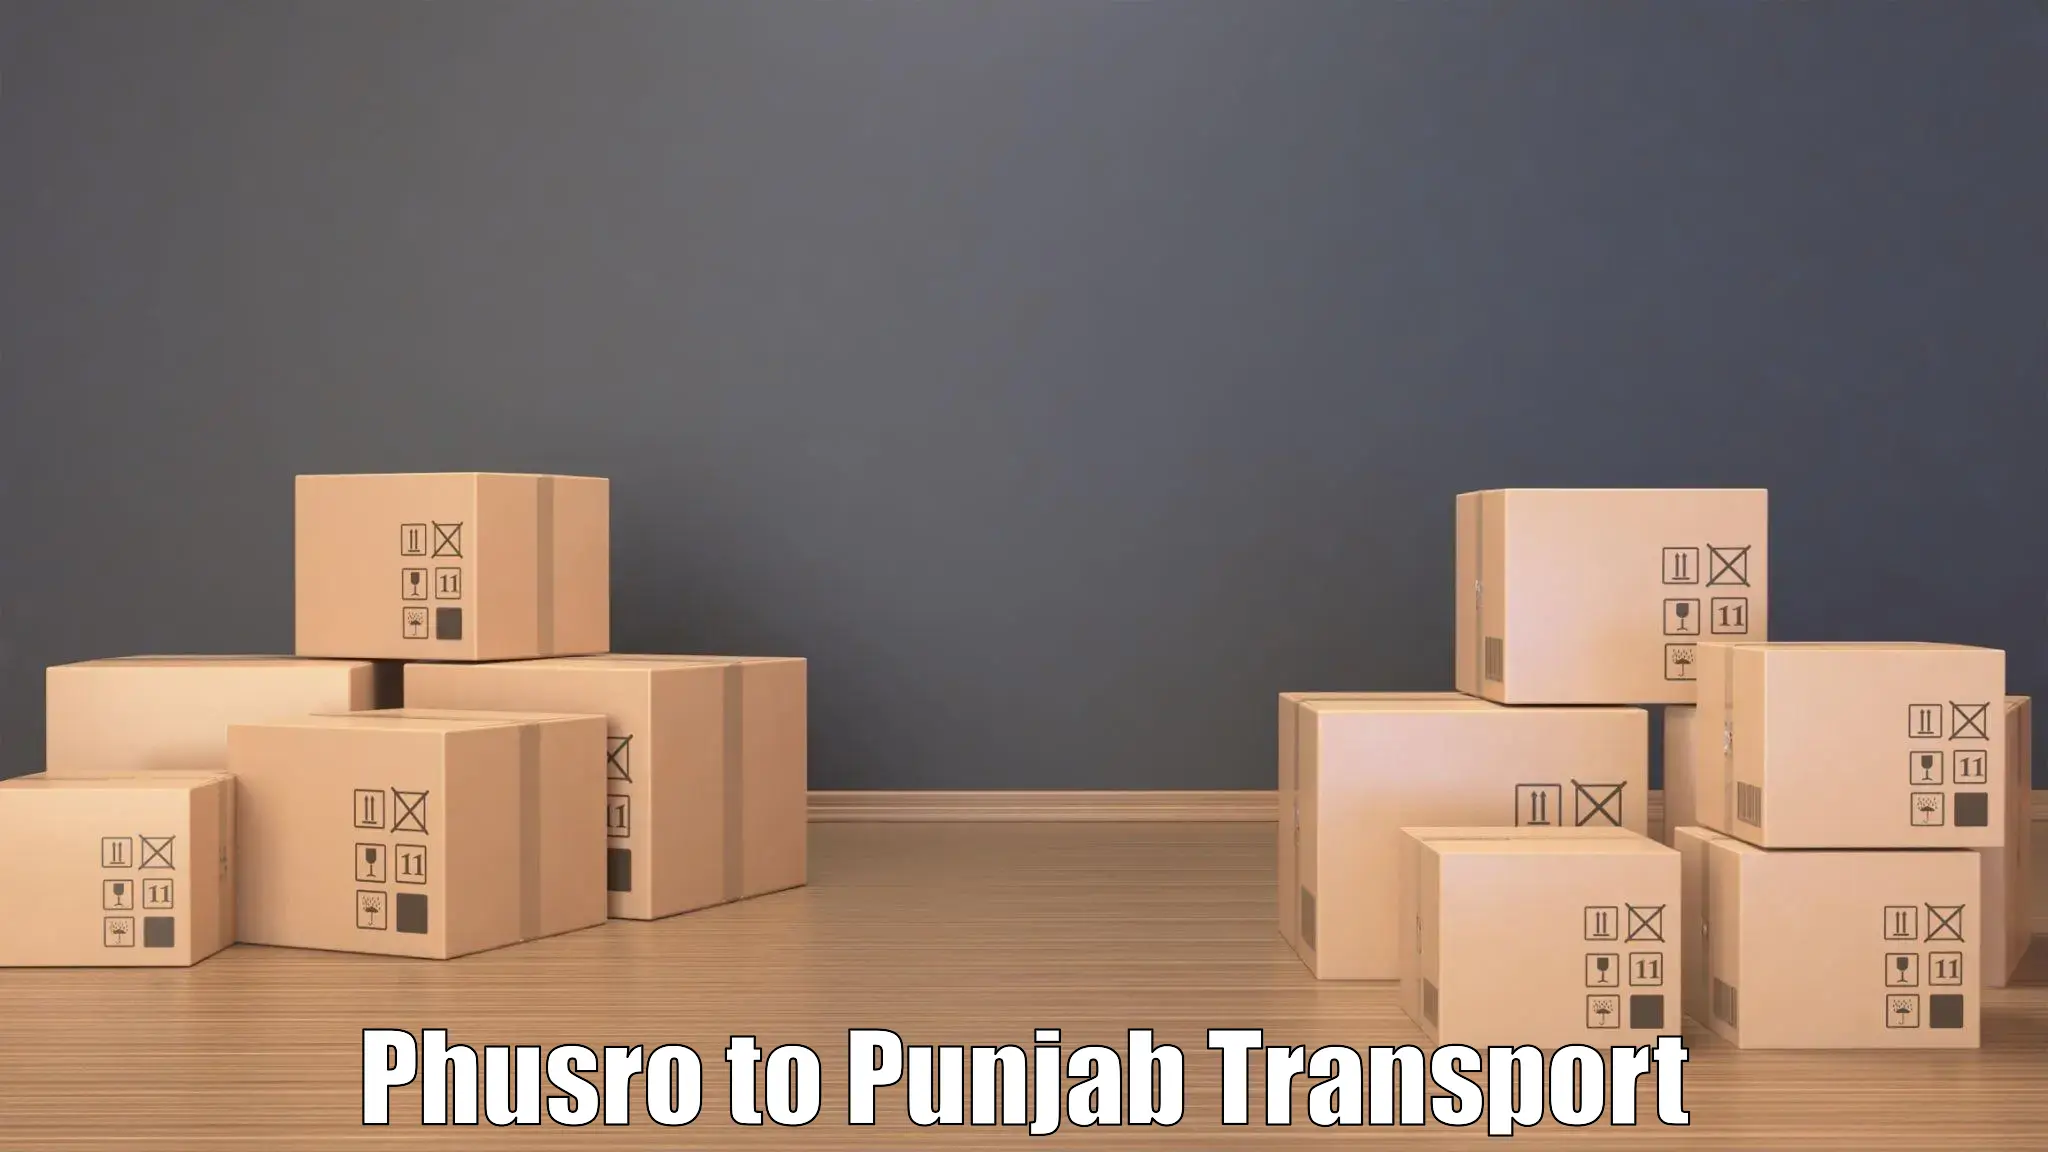 Nearby transport service Phusro to Garhshankar